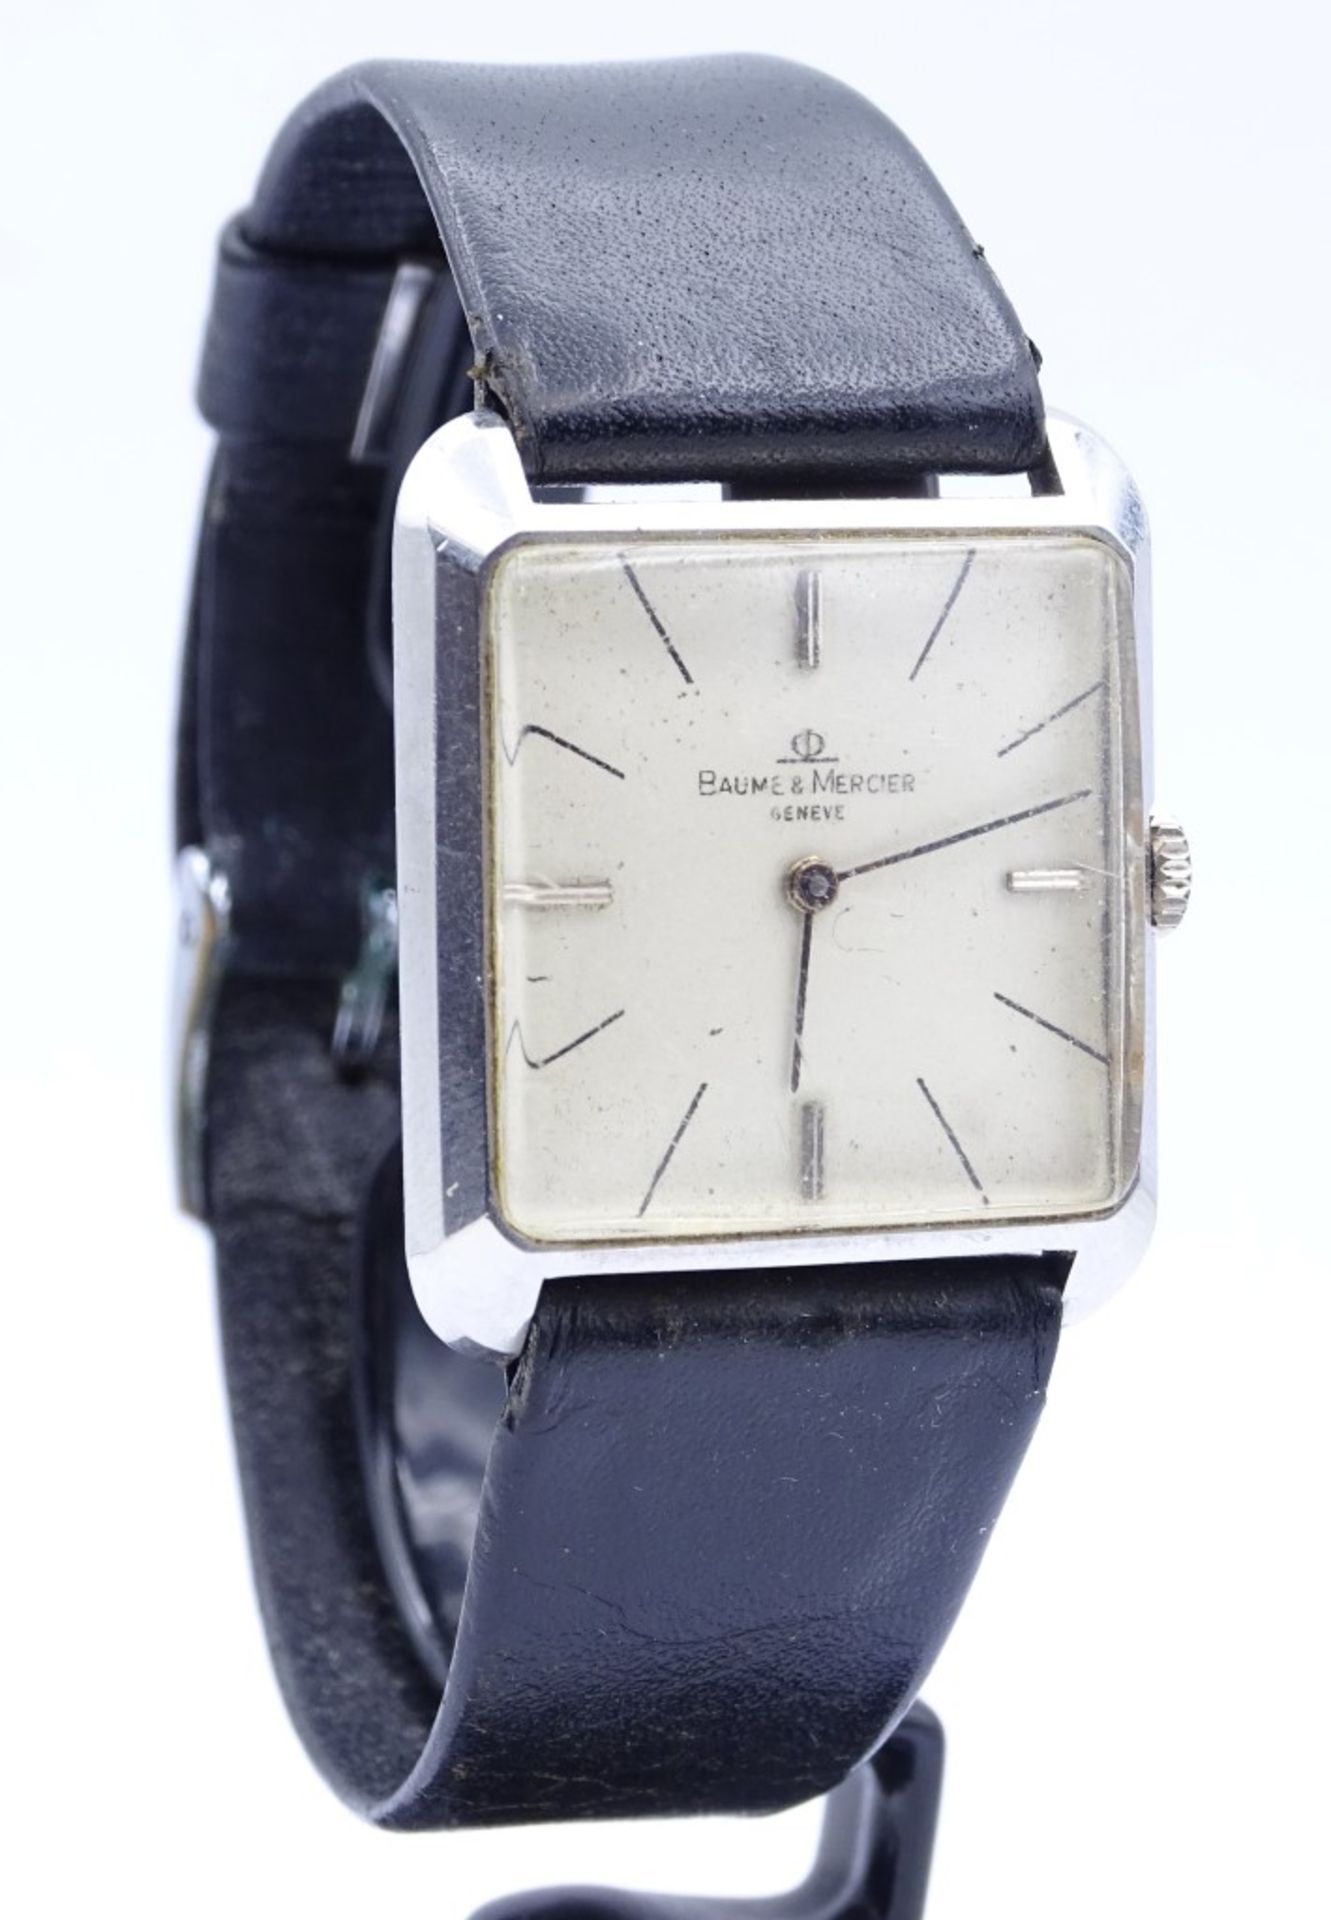 Vintage Armbanduhr "Baume & Mercier", Cal. 320, mechanisch (Handaufzug),Werk läuft, - Bild 2 aus 6